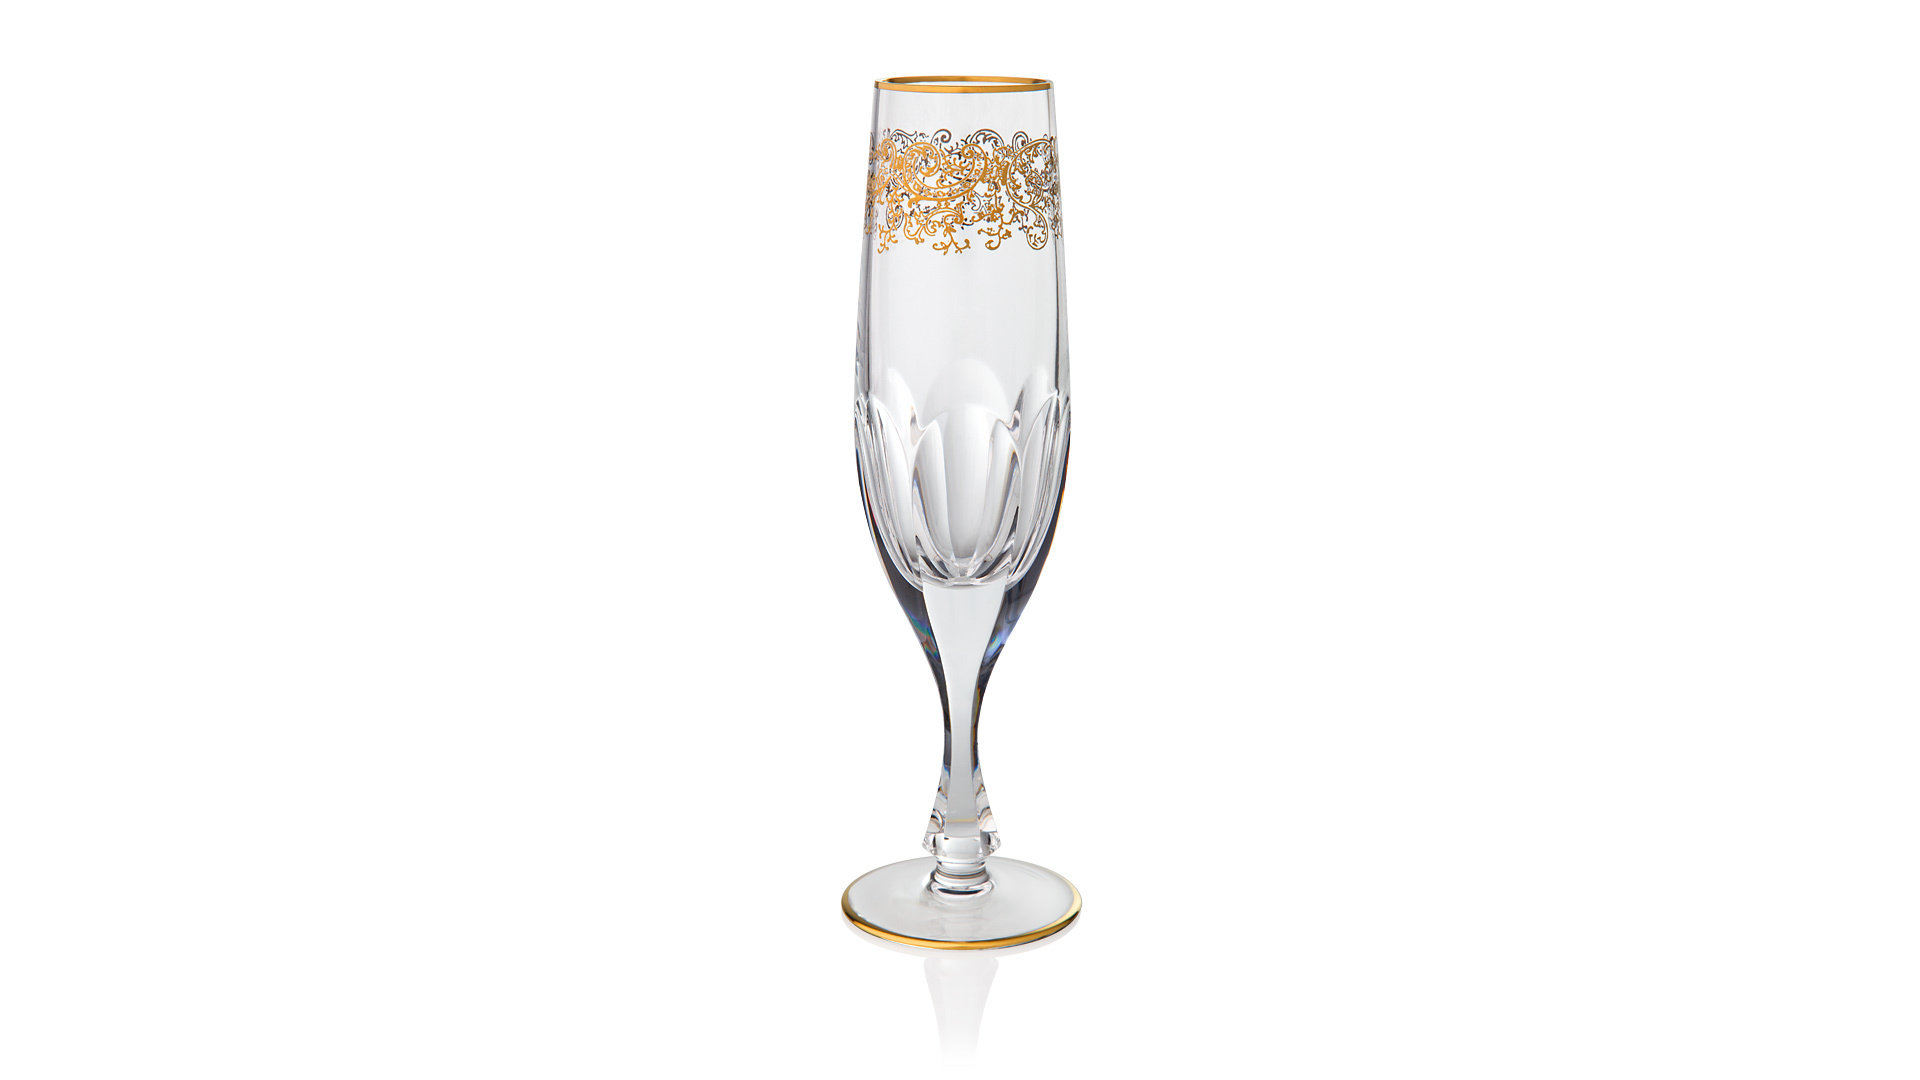 Набор фужеров для шампанского Cristal de Paris Нора 150мл, 6шт